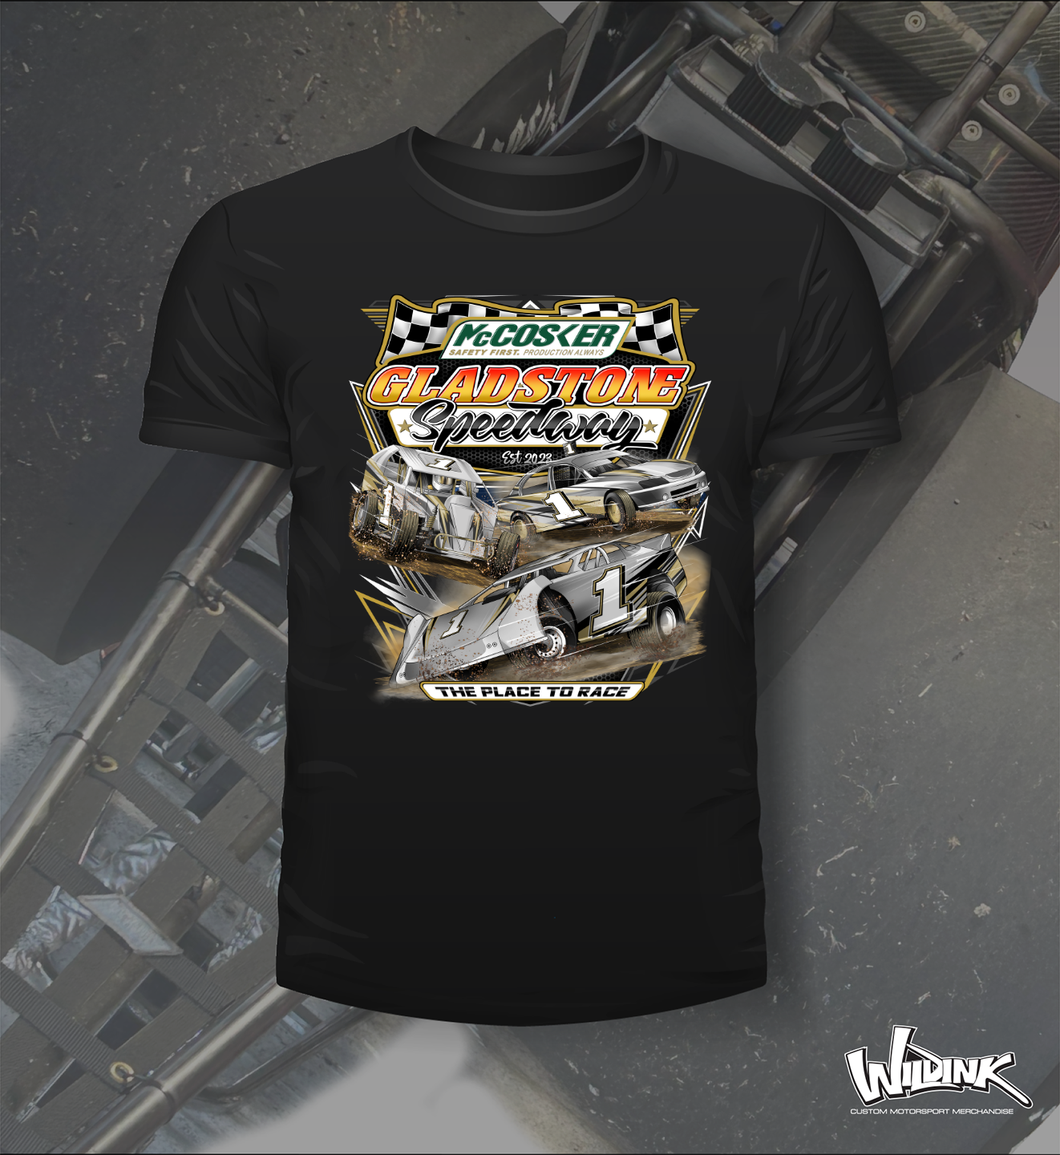 Gladstone Speedway - Tee Shirt